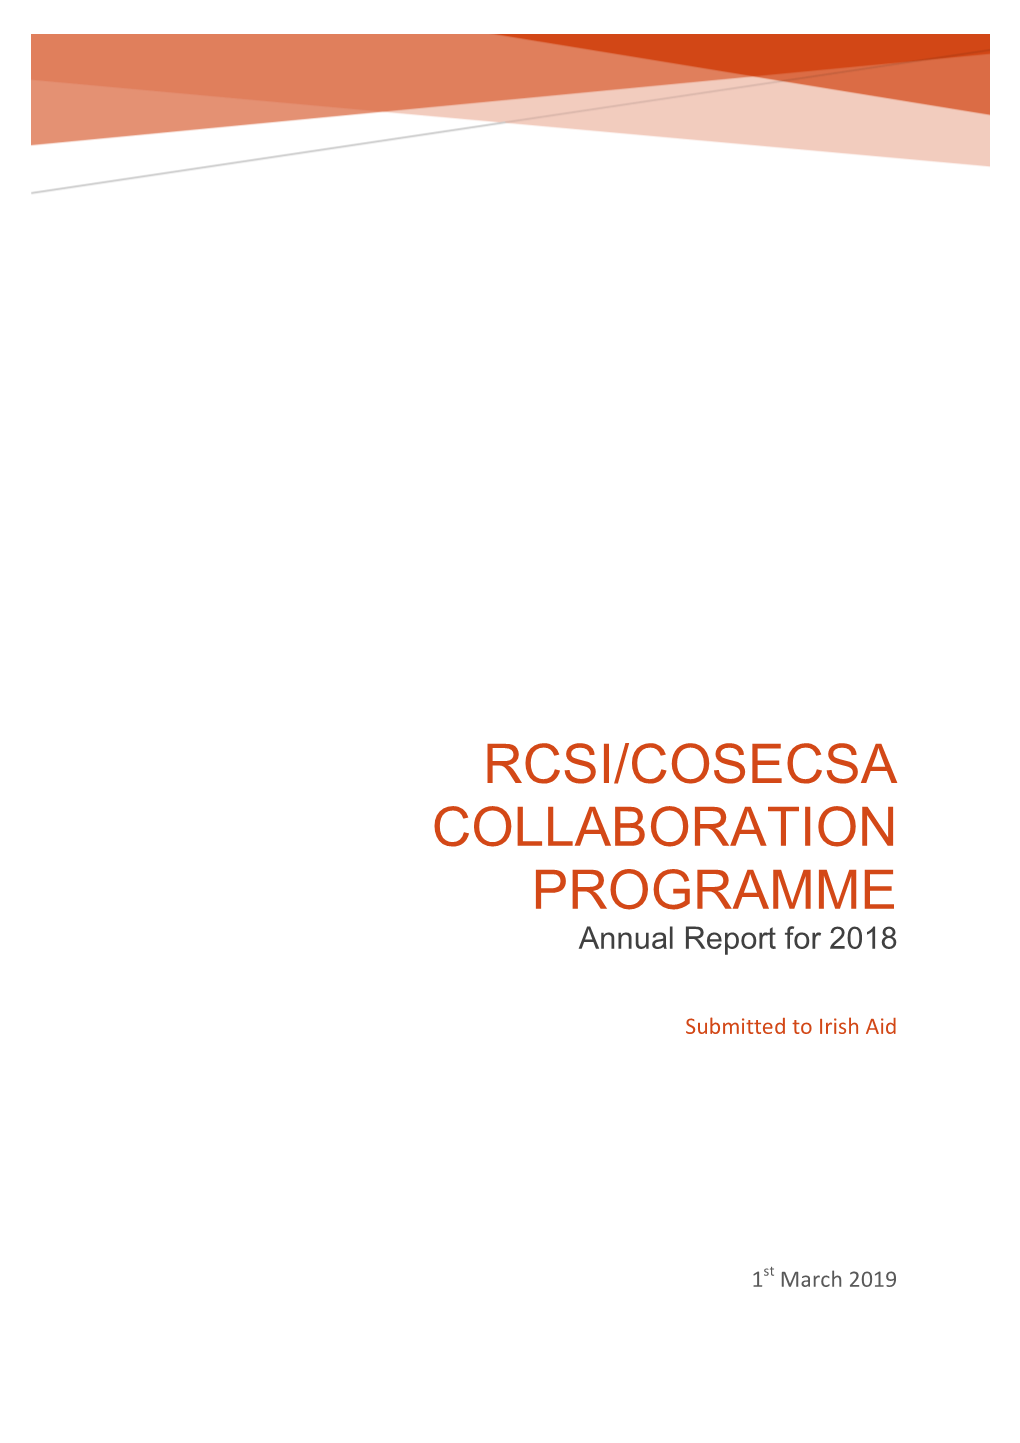 RCSI/COSECSA Collaboration Programme Annual Report 2018